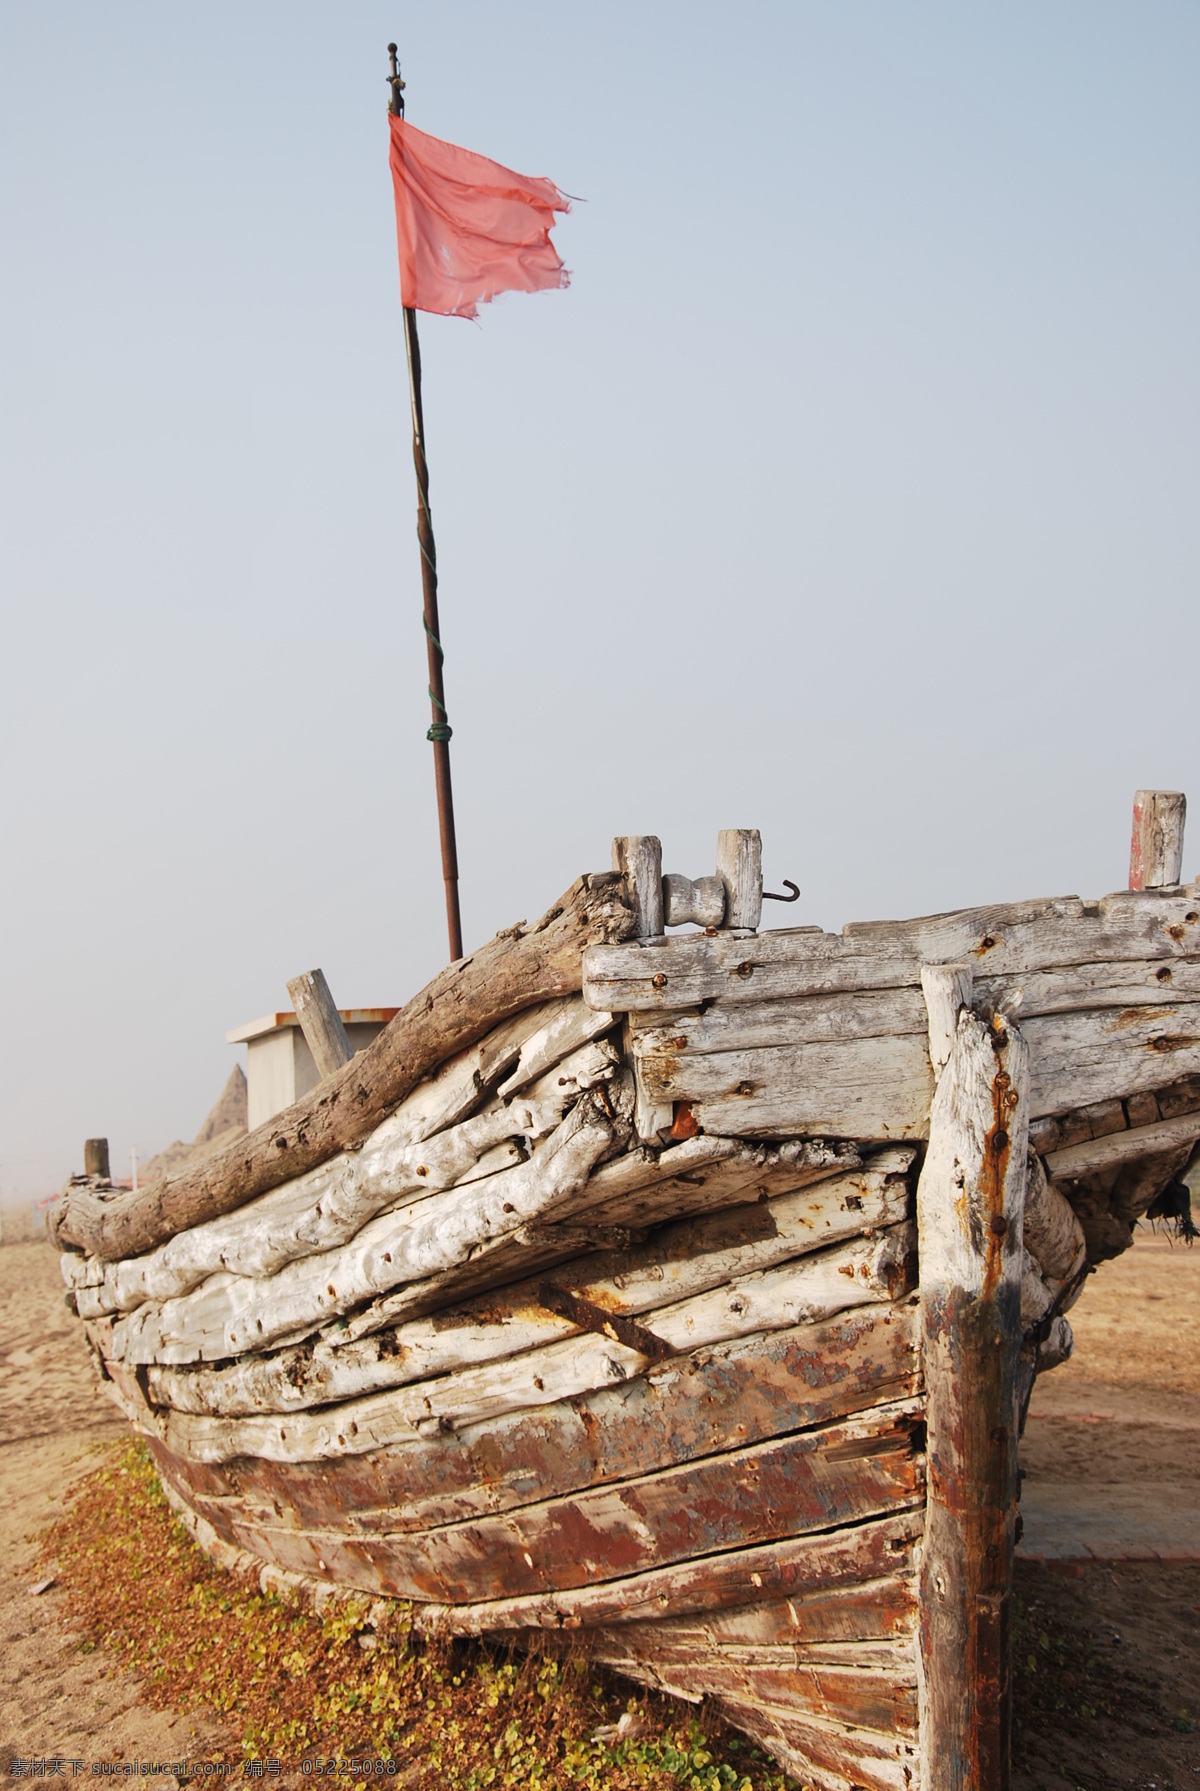 海边小船 海边小渔船 红旗 自然景观